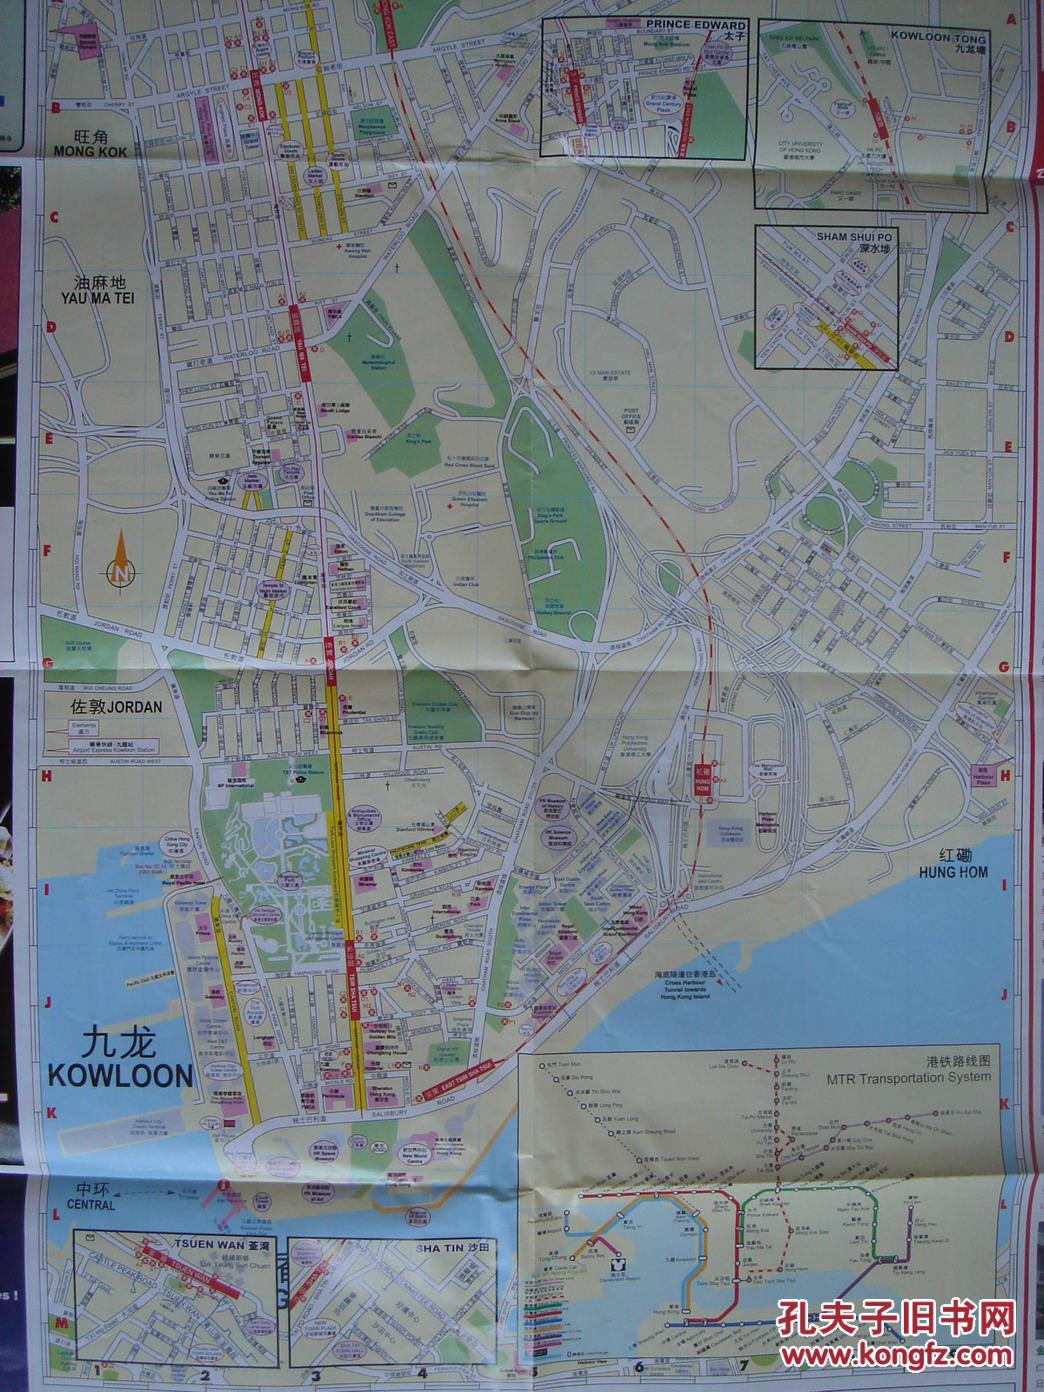 【旧地图】东方明珠 香港旅游地图 大4开 2008年版图片